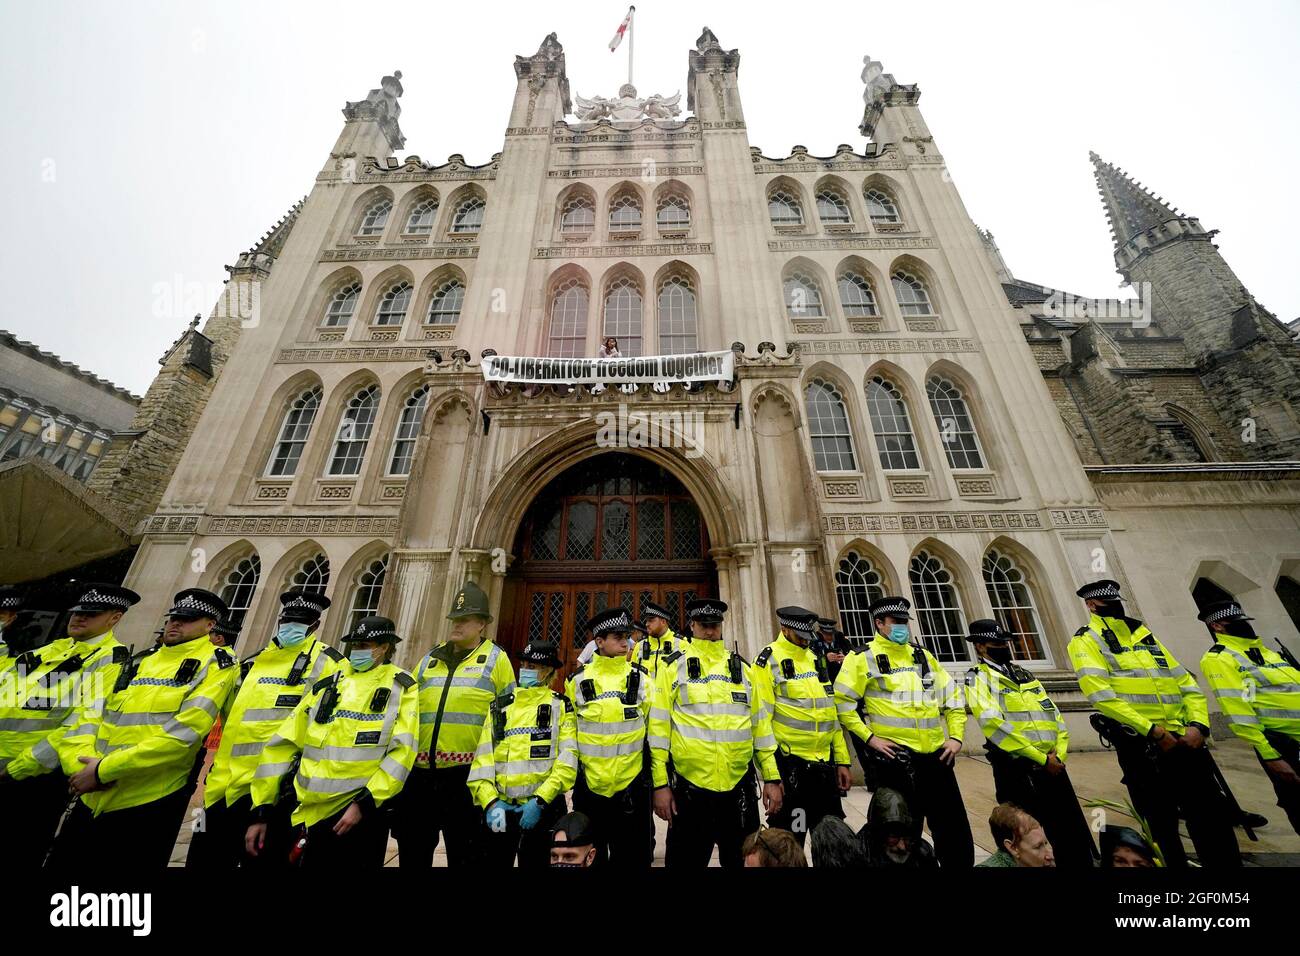 Polizeibeamte bilden eine Linie vor dem Eingang zur Guildhall in London, wo Demonstranten während einer Aussterbungsrebellion, die einen Protest ausführte, auf einen Vorsprung über dem Eingang geklettert sind. Bilddatum: Sonntag, 22. August 2021. Stockfoto